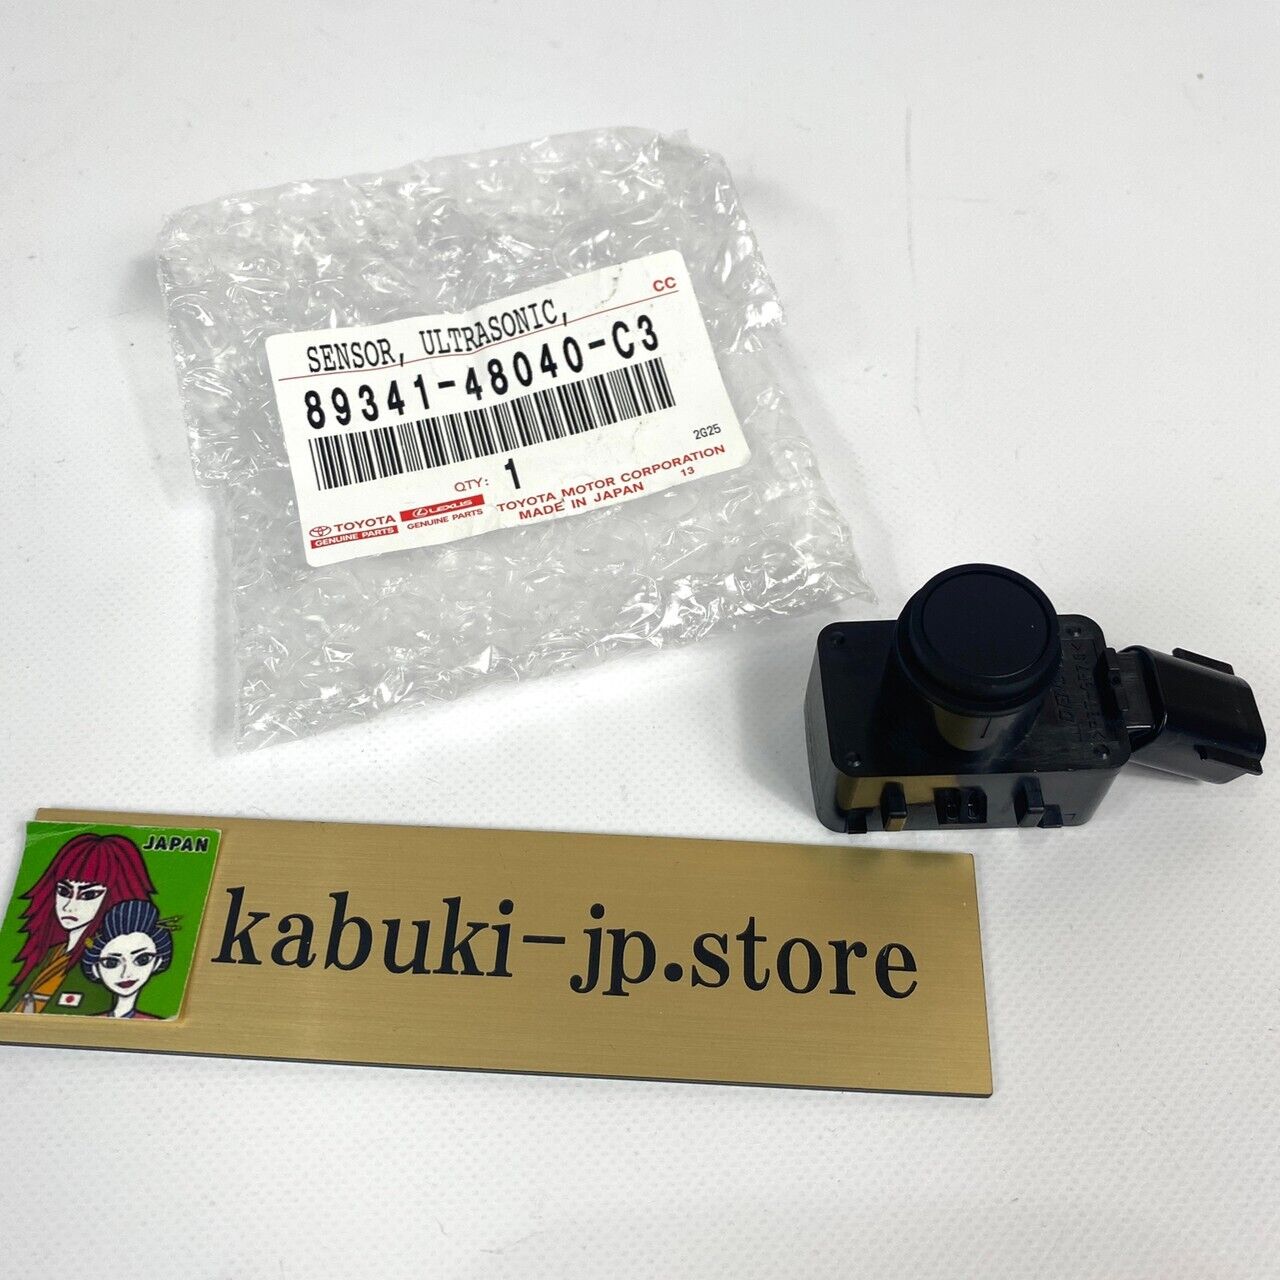 http://kabuki-motors.jp/cdn/shop/products/57_9f0ca0d8-f7a7-4156-a73a-c92d664cd7e9.jpg?v=1670658370